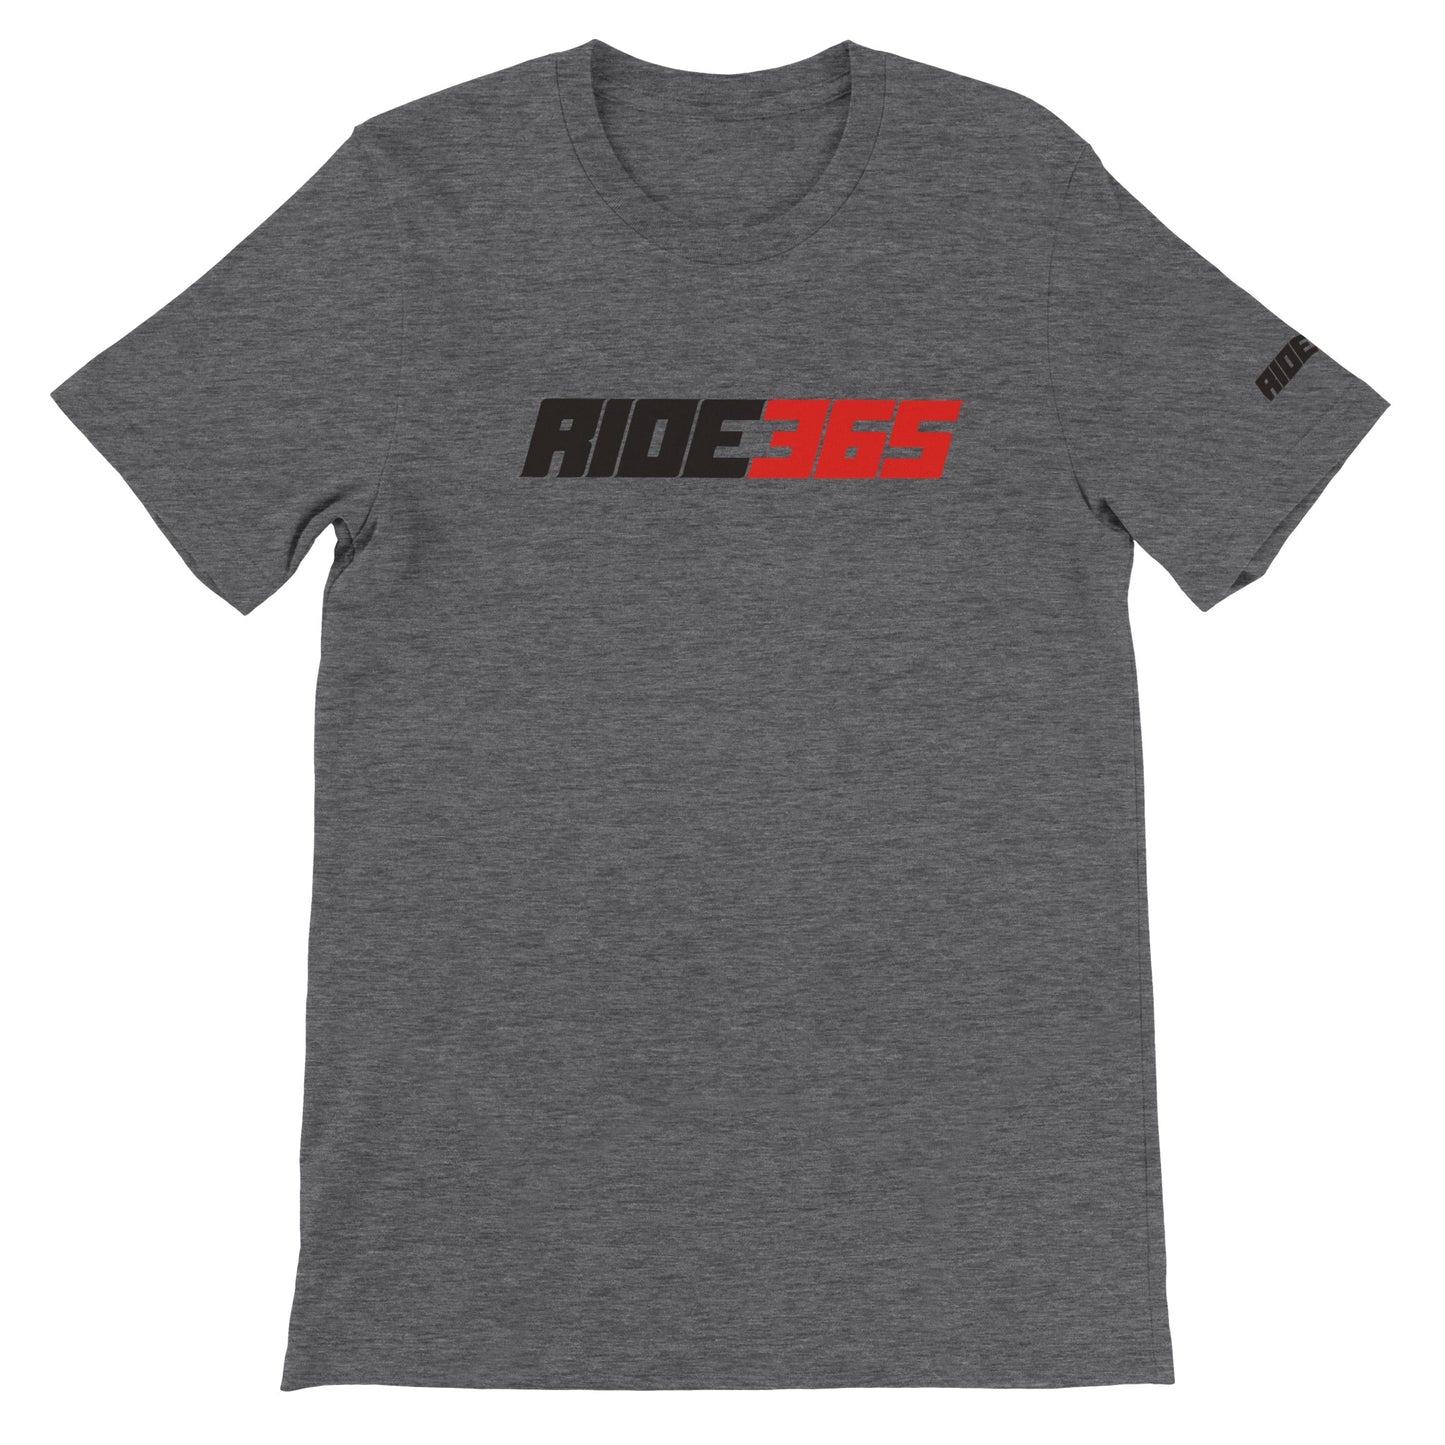 RIDE365 Premium Crewneck T-shirt